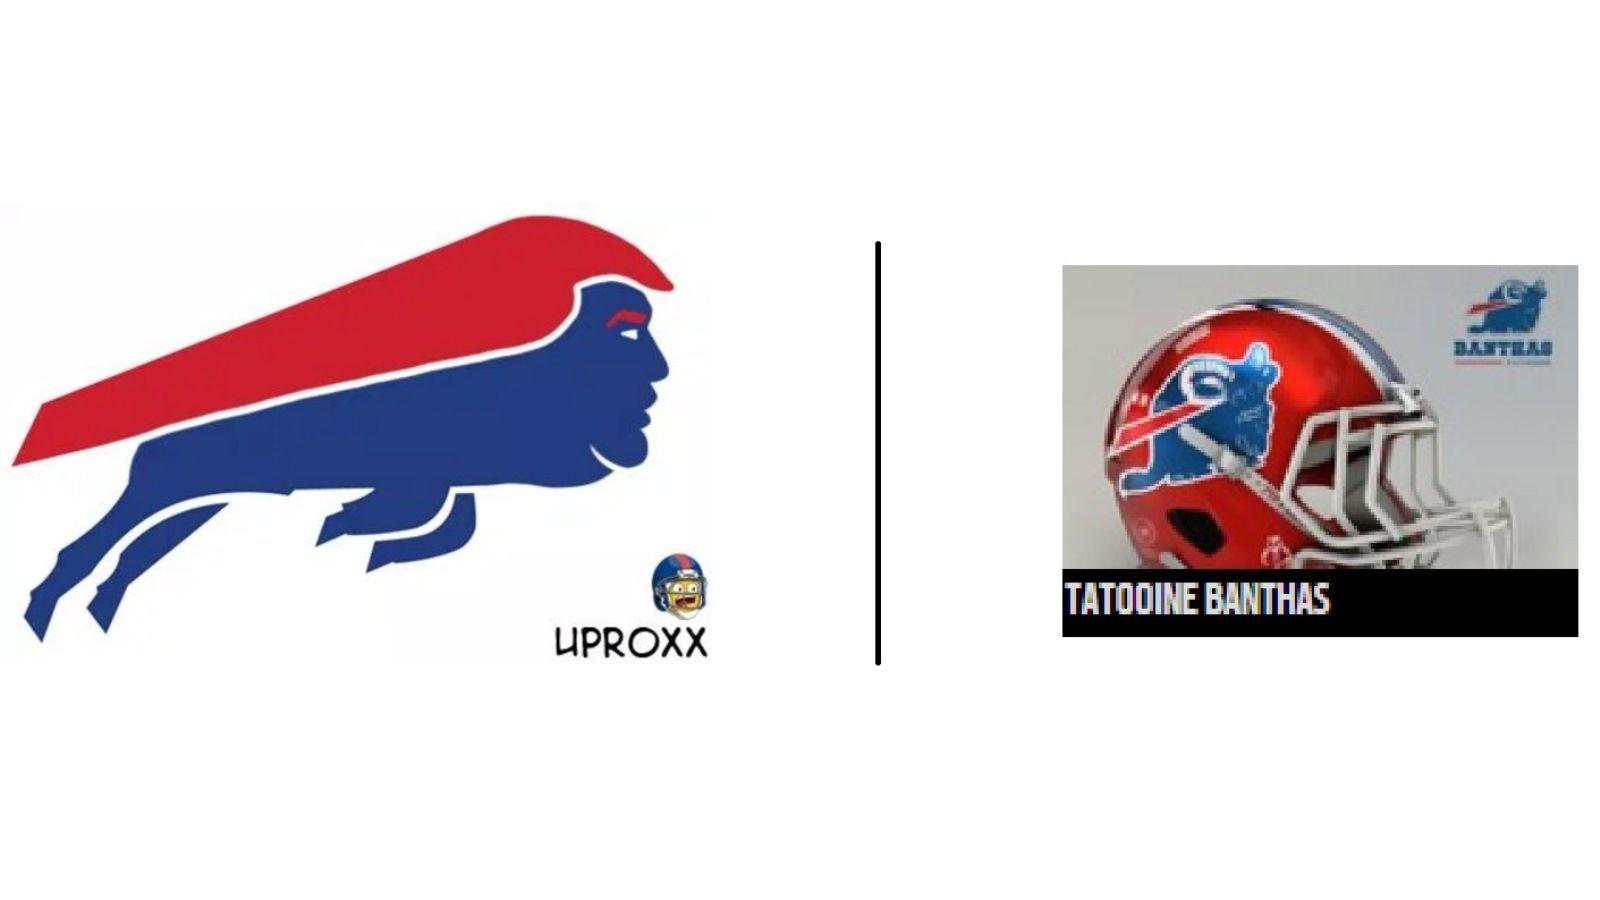 Bills Logo - Some more fun with Bills, NFL logos